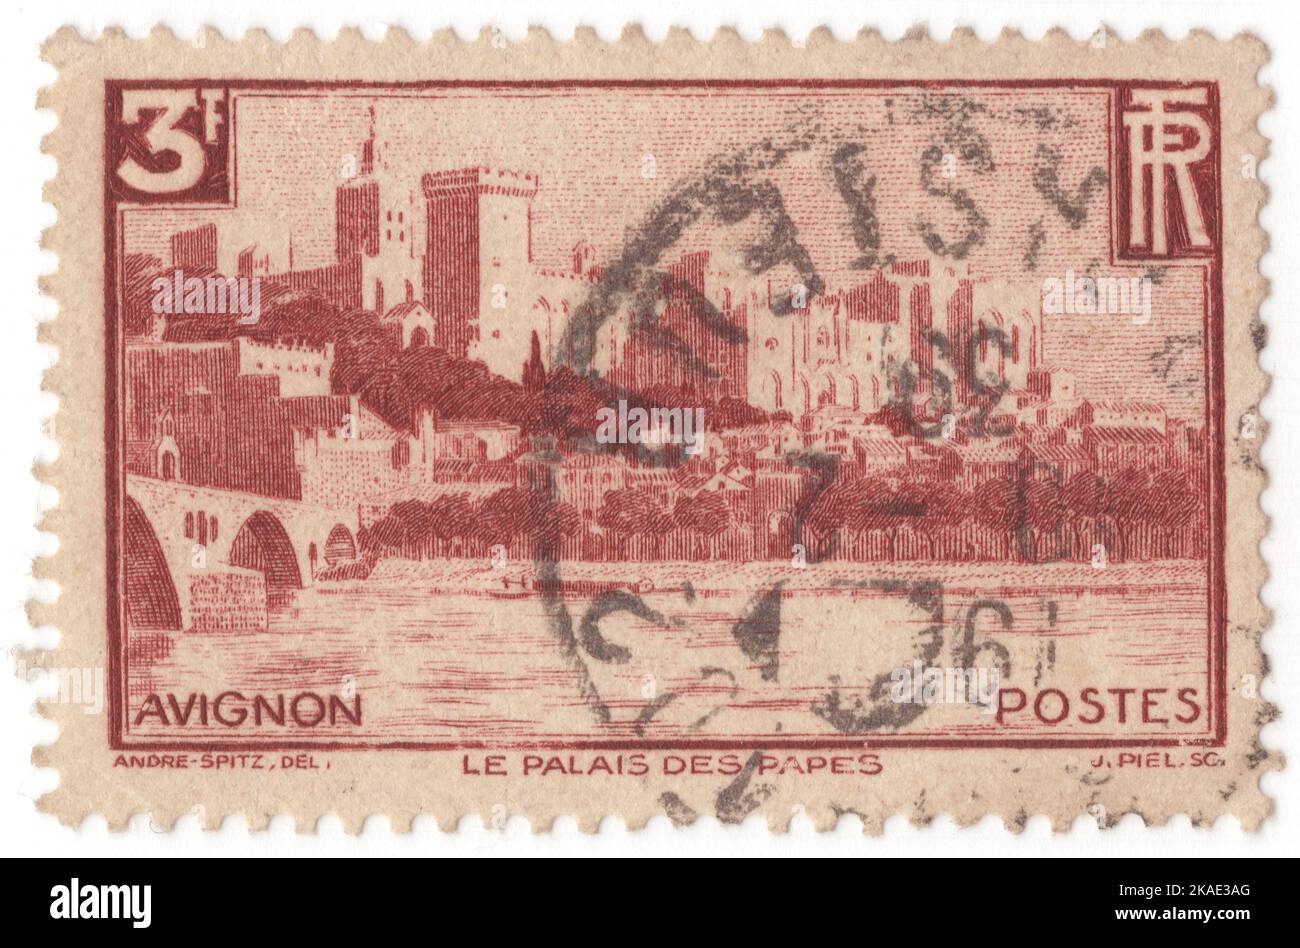 FRANKREICH - 1938: Eine karminbraune Briefmarke mit 3 Franken, die das Panorama auf den Papstpalast (Palais des Papes) darstellt, ist ein historischer Palast in Avignon, Südfrankreich. Es ist eines der größten und bedeutendsten mittelalterlichen gotischen Gebäude in Europa. Einst eine Festung und ein Palast, war die päpstliche Residenz im 14.. Jahrhundert Sitz des westlichen Christentums. Seit 1995 ist der Papstpalast zusammen mit dem historischen Zentrum von Avignon zum UNESCO-Weltkulturerbe erklärt worden, weil er eine herausragende Architektur und eine historische Bedeutung für das Papsttum besitzt Stockfoto